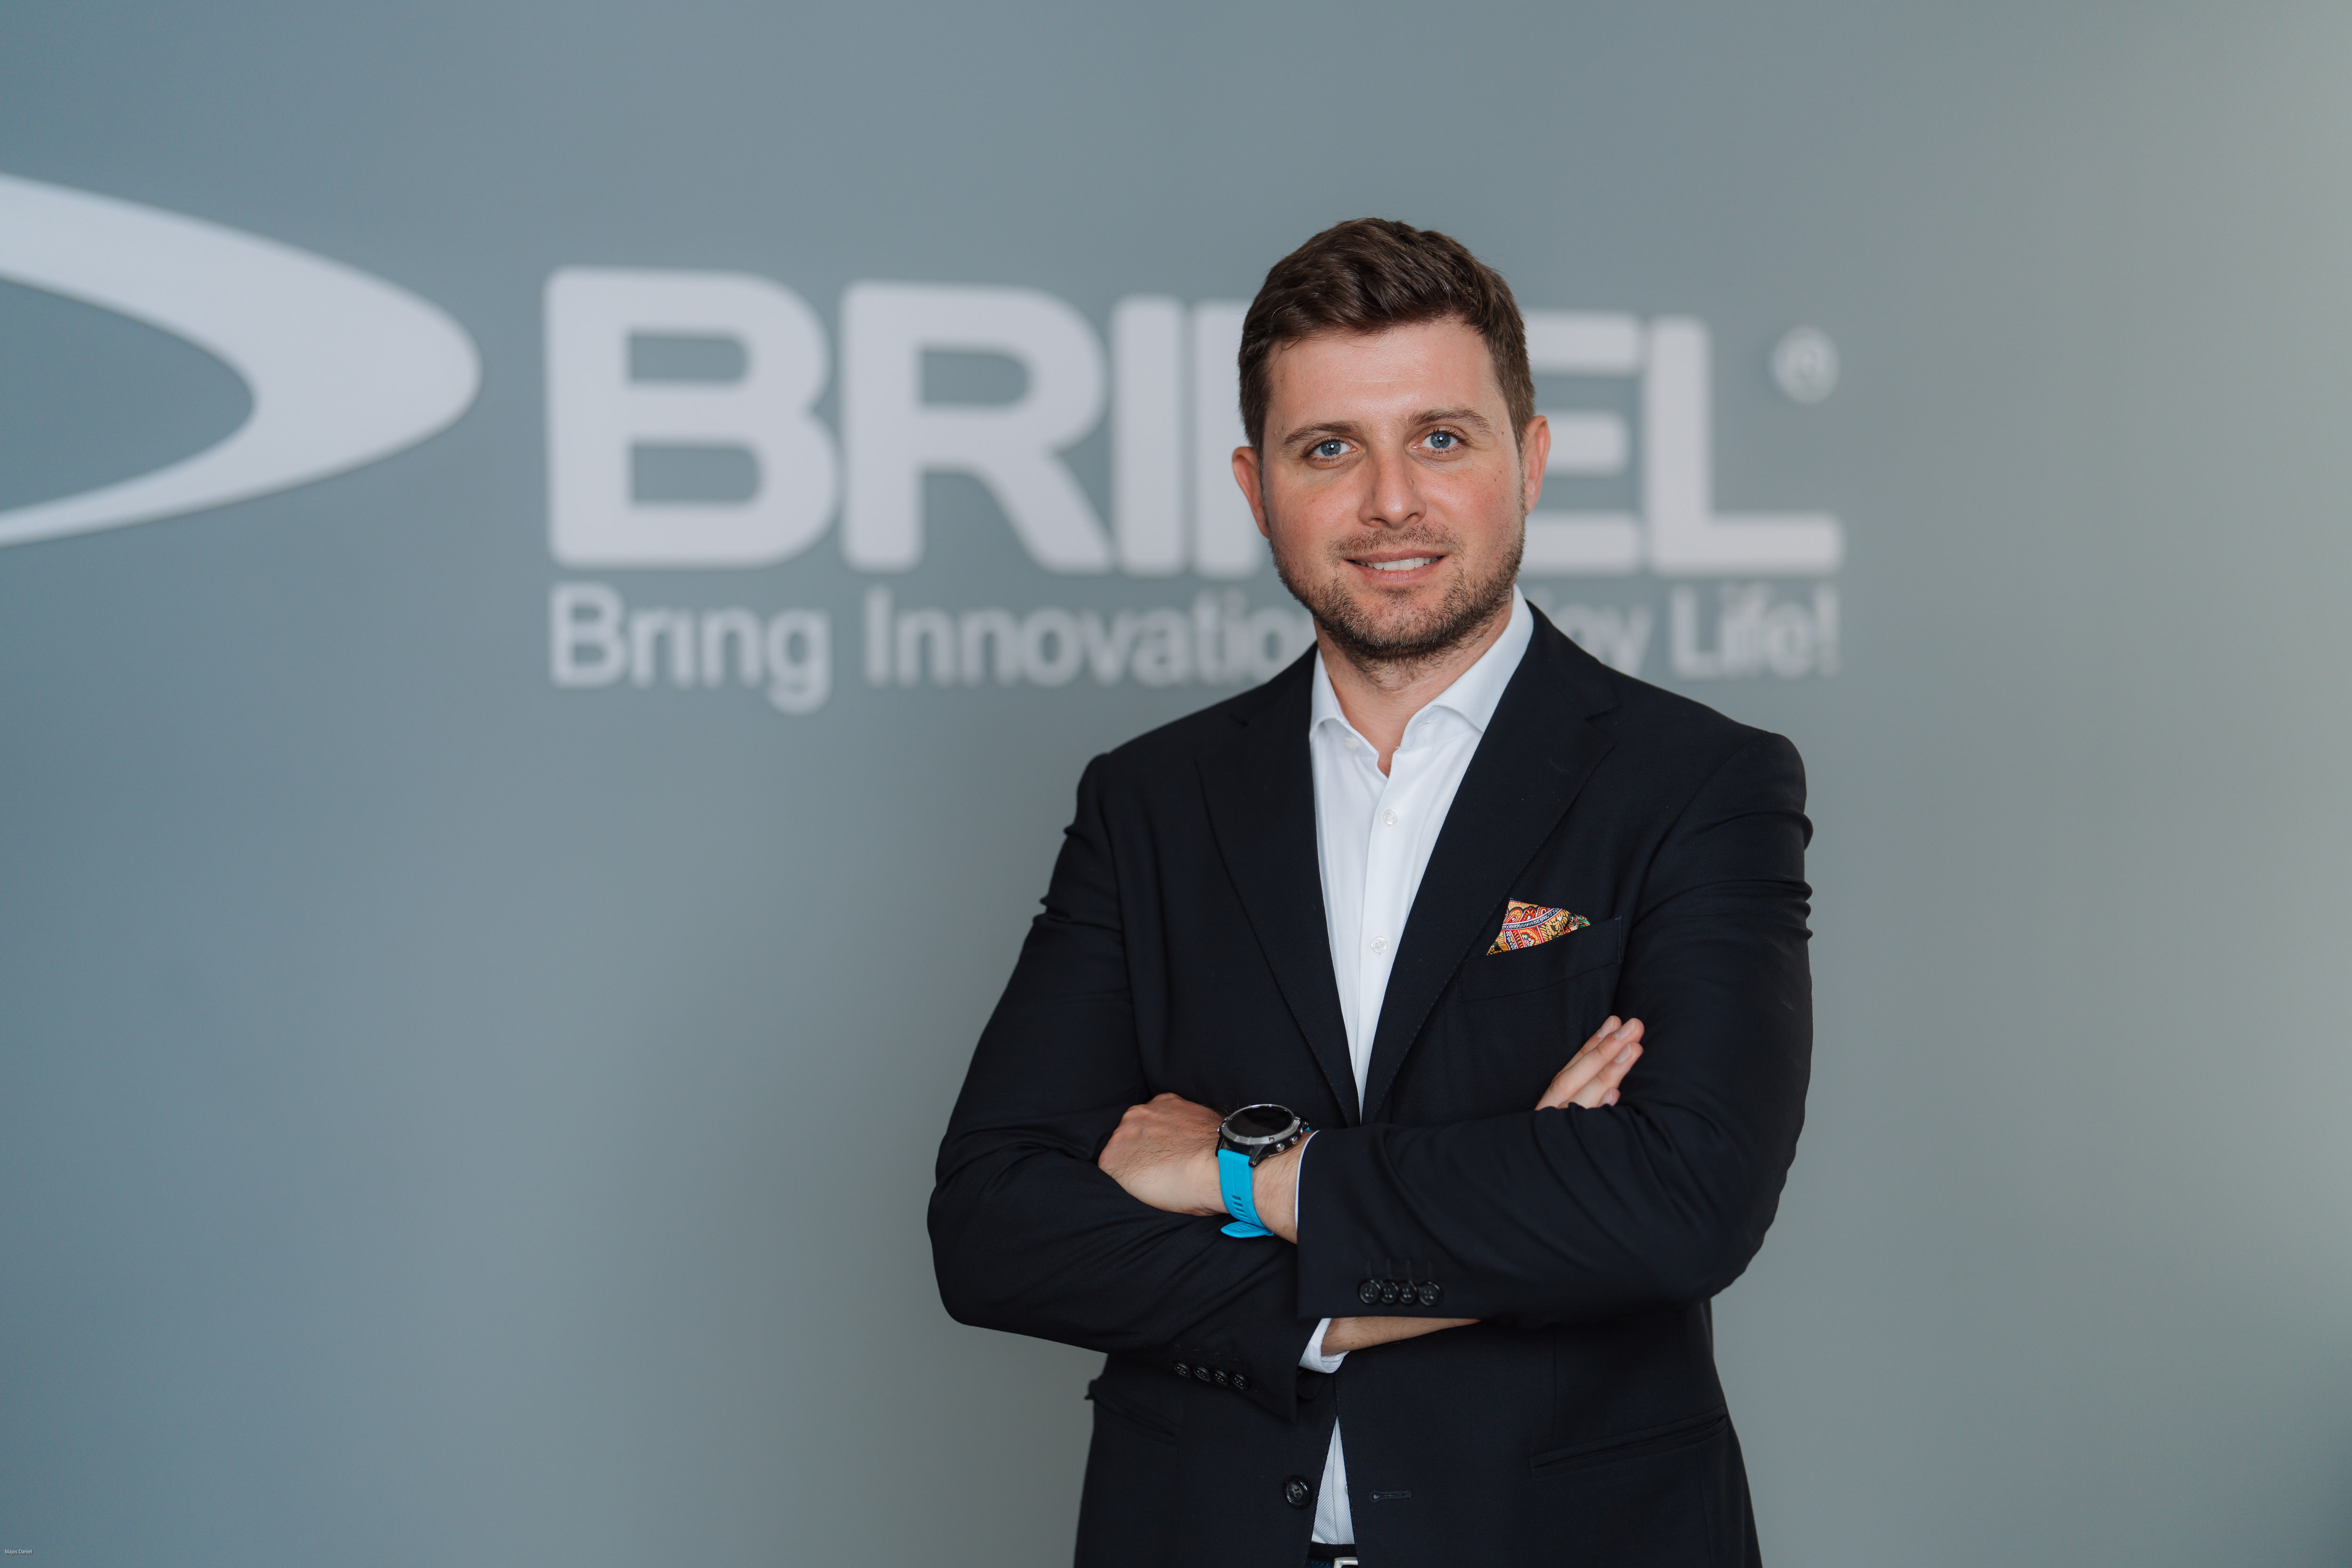 BRINEL extinde portofoliul de servicii cu soluții AWS, consolidându-și expertiza în transformarea digitală